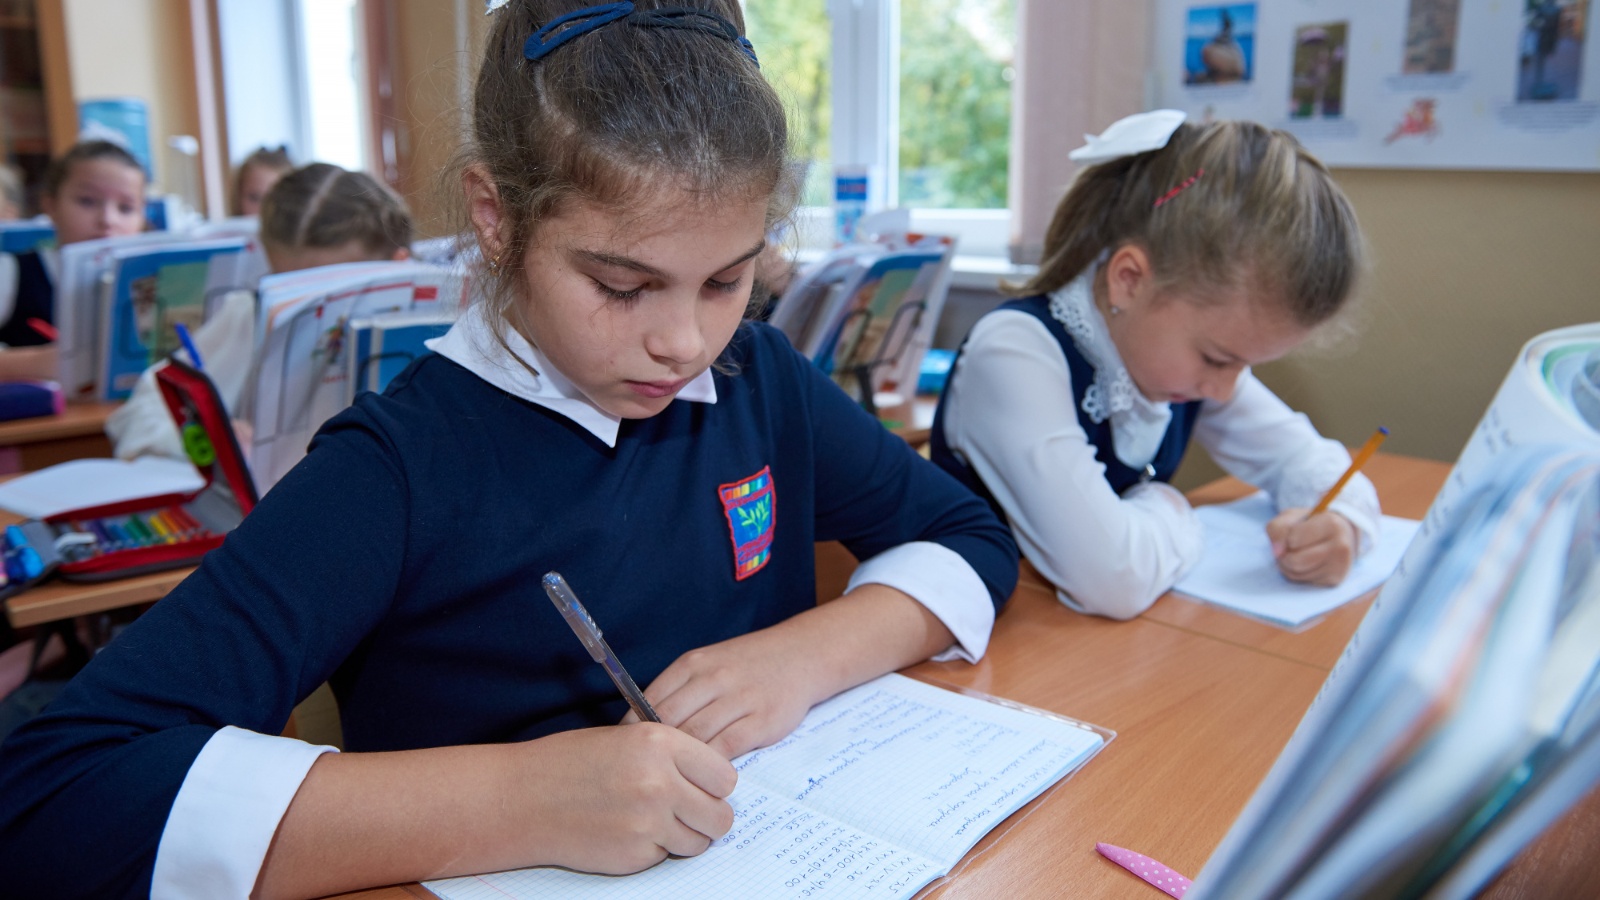 Вопросы защиты права ребёнка на образование обсудят в Татарстане на съезде уполномоченных по правам ребёнка